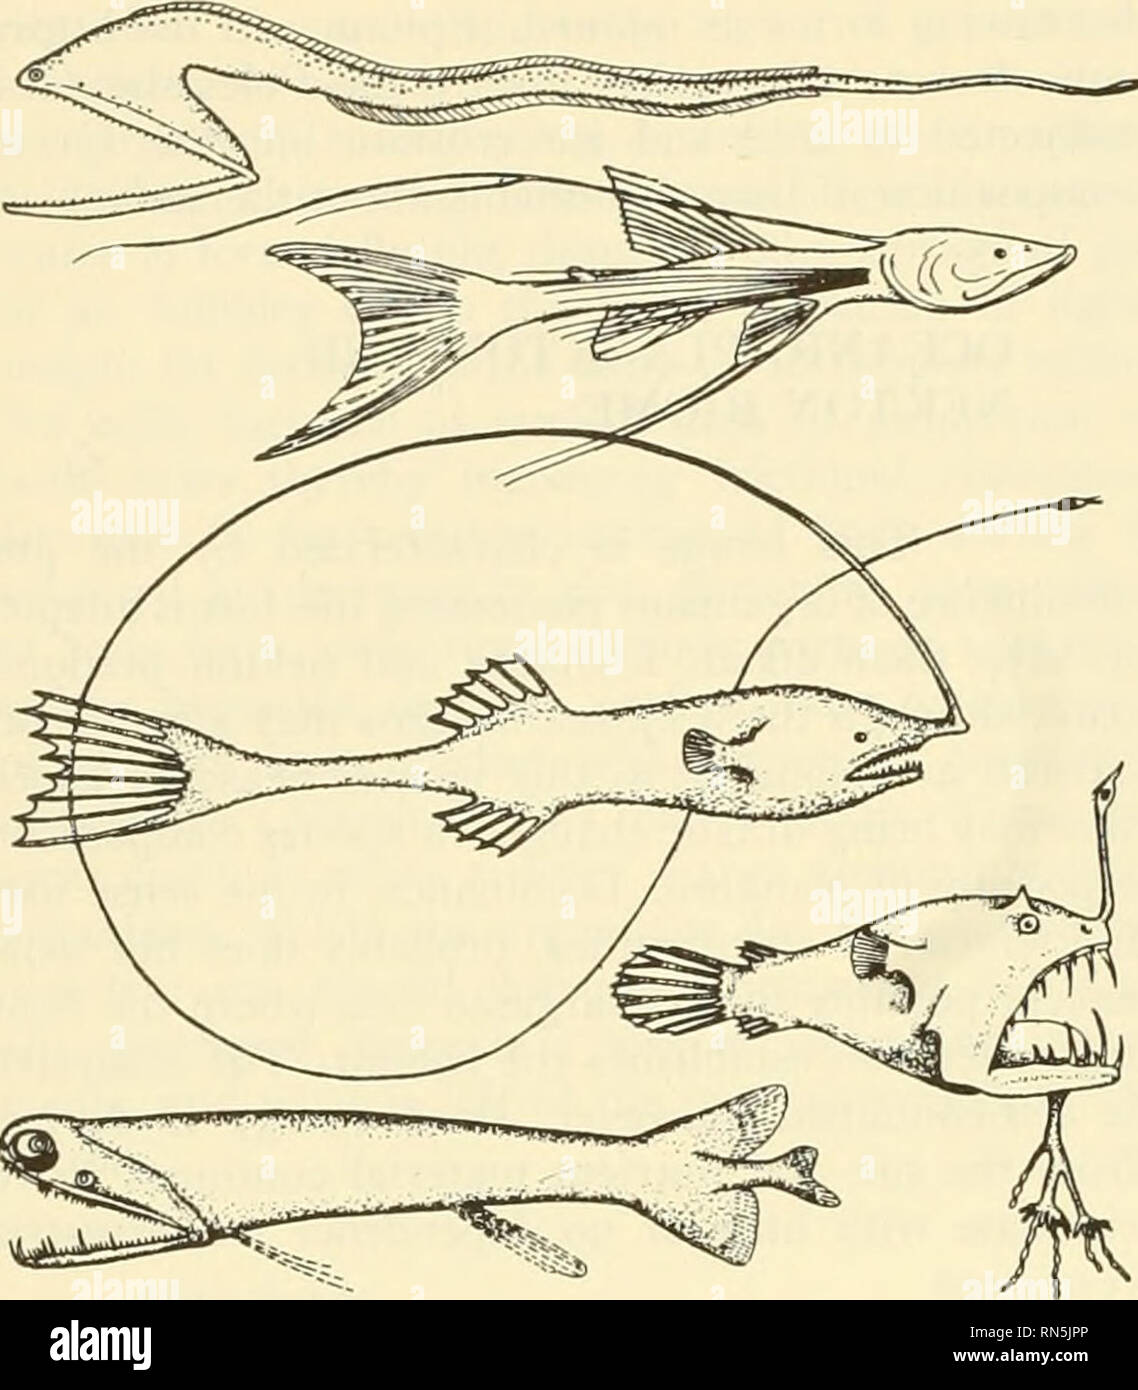 . L'écologie animale. L'écologie animale. epresentati' poissons iter (Sver. e/o/. 1942). La bathy- abyssopclagic et collectivités sont considérés comme un seul. Les poissons sont minces et de couleur sombre-. Les invertébrés pélagiques : quelques espèces endémiques de radiolaires, méduses, les cténophores, nemer palestiniens, d'ostracodes, de copépodes, d'amphipodes, euphausi aceans mysidaceans-,, crevettes, et de calmars. La couleur rouge est plus commun qu'à des profondeurs intermédiaires. Les animaux benthiques ont généralement des organismes de télévision, très longues jambes, ou d'autres moyens de distribuer leurs vi'huit sur le lâche, l'exsudat floconneux. De nombreuses espèces s'élever au-dessus de l'oo Banque D'Images